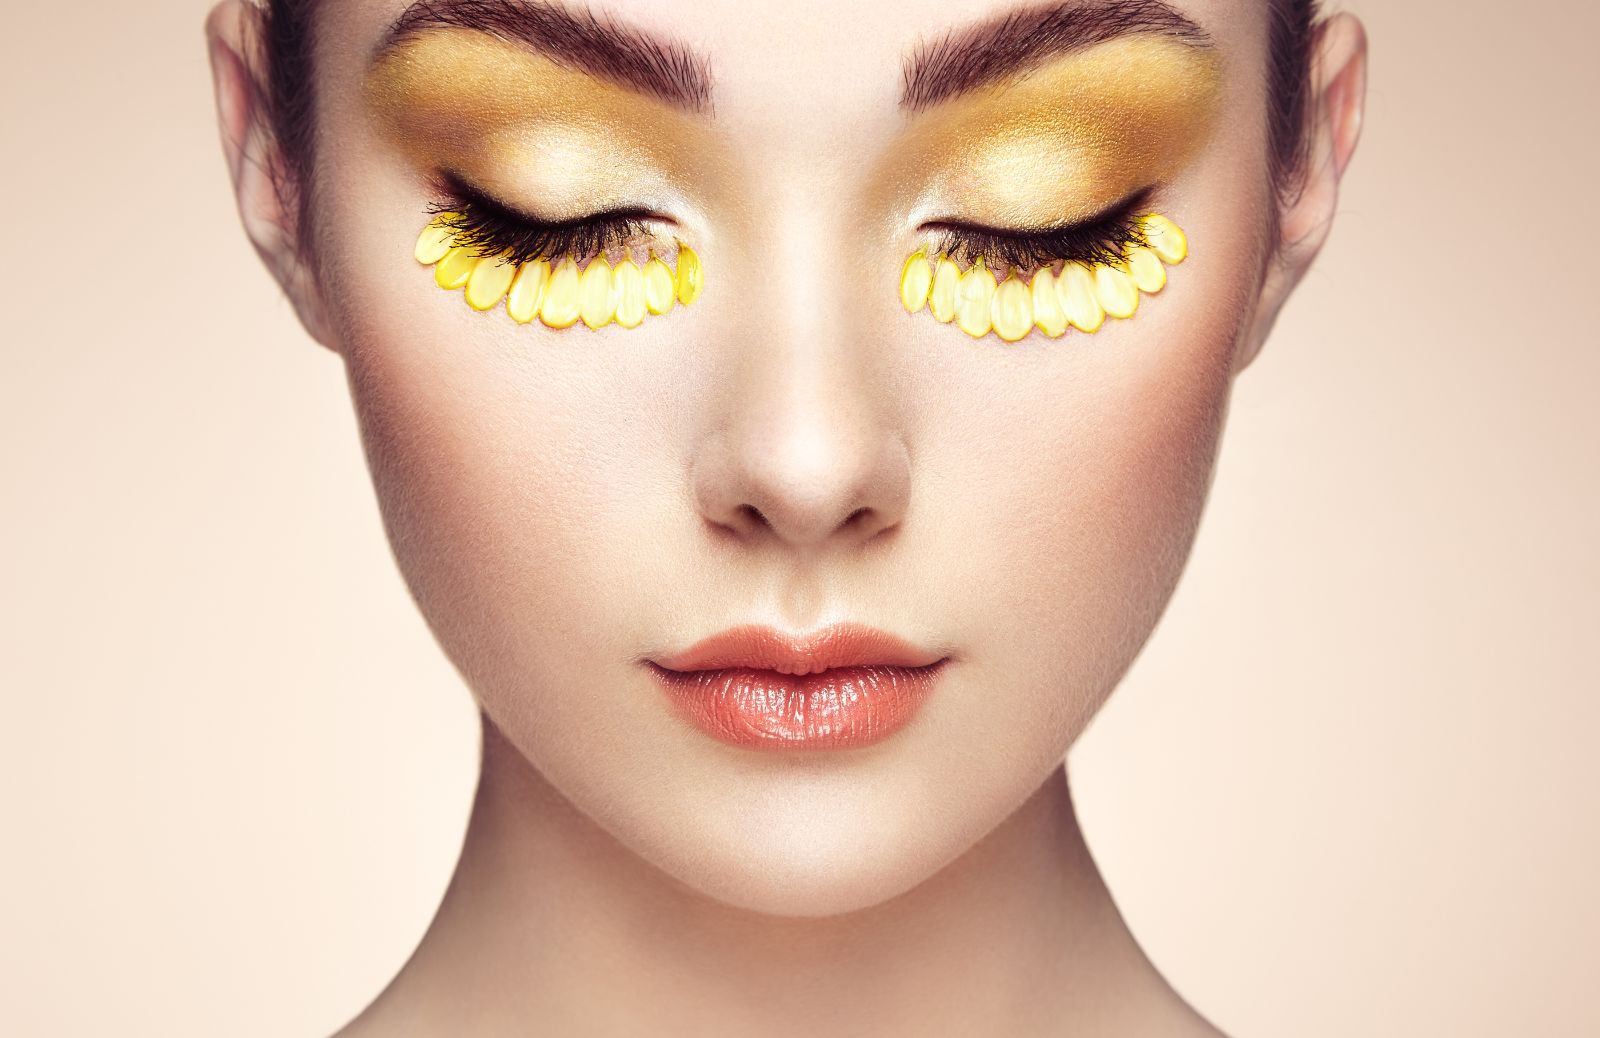 La beauty routine coreana: un nuovo modo di intendere la skincare 